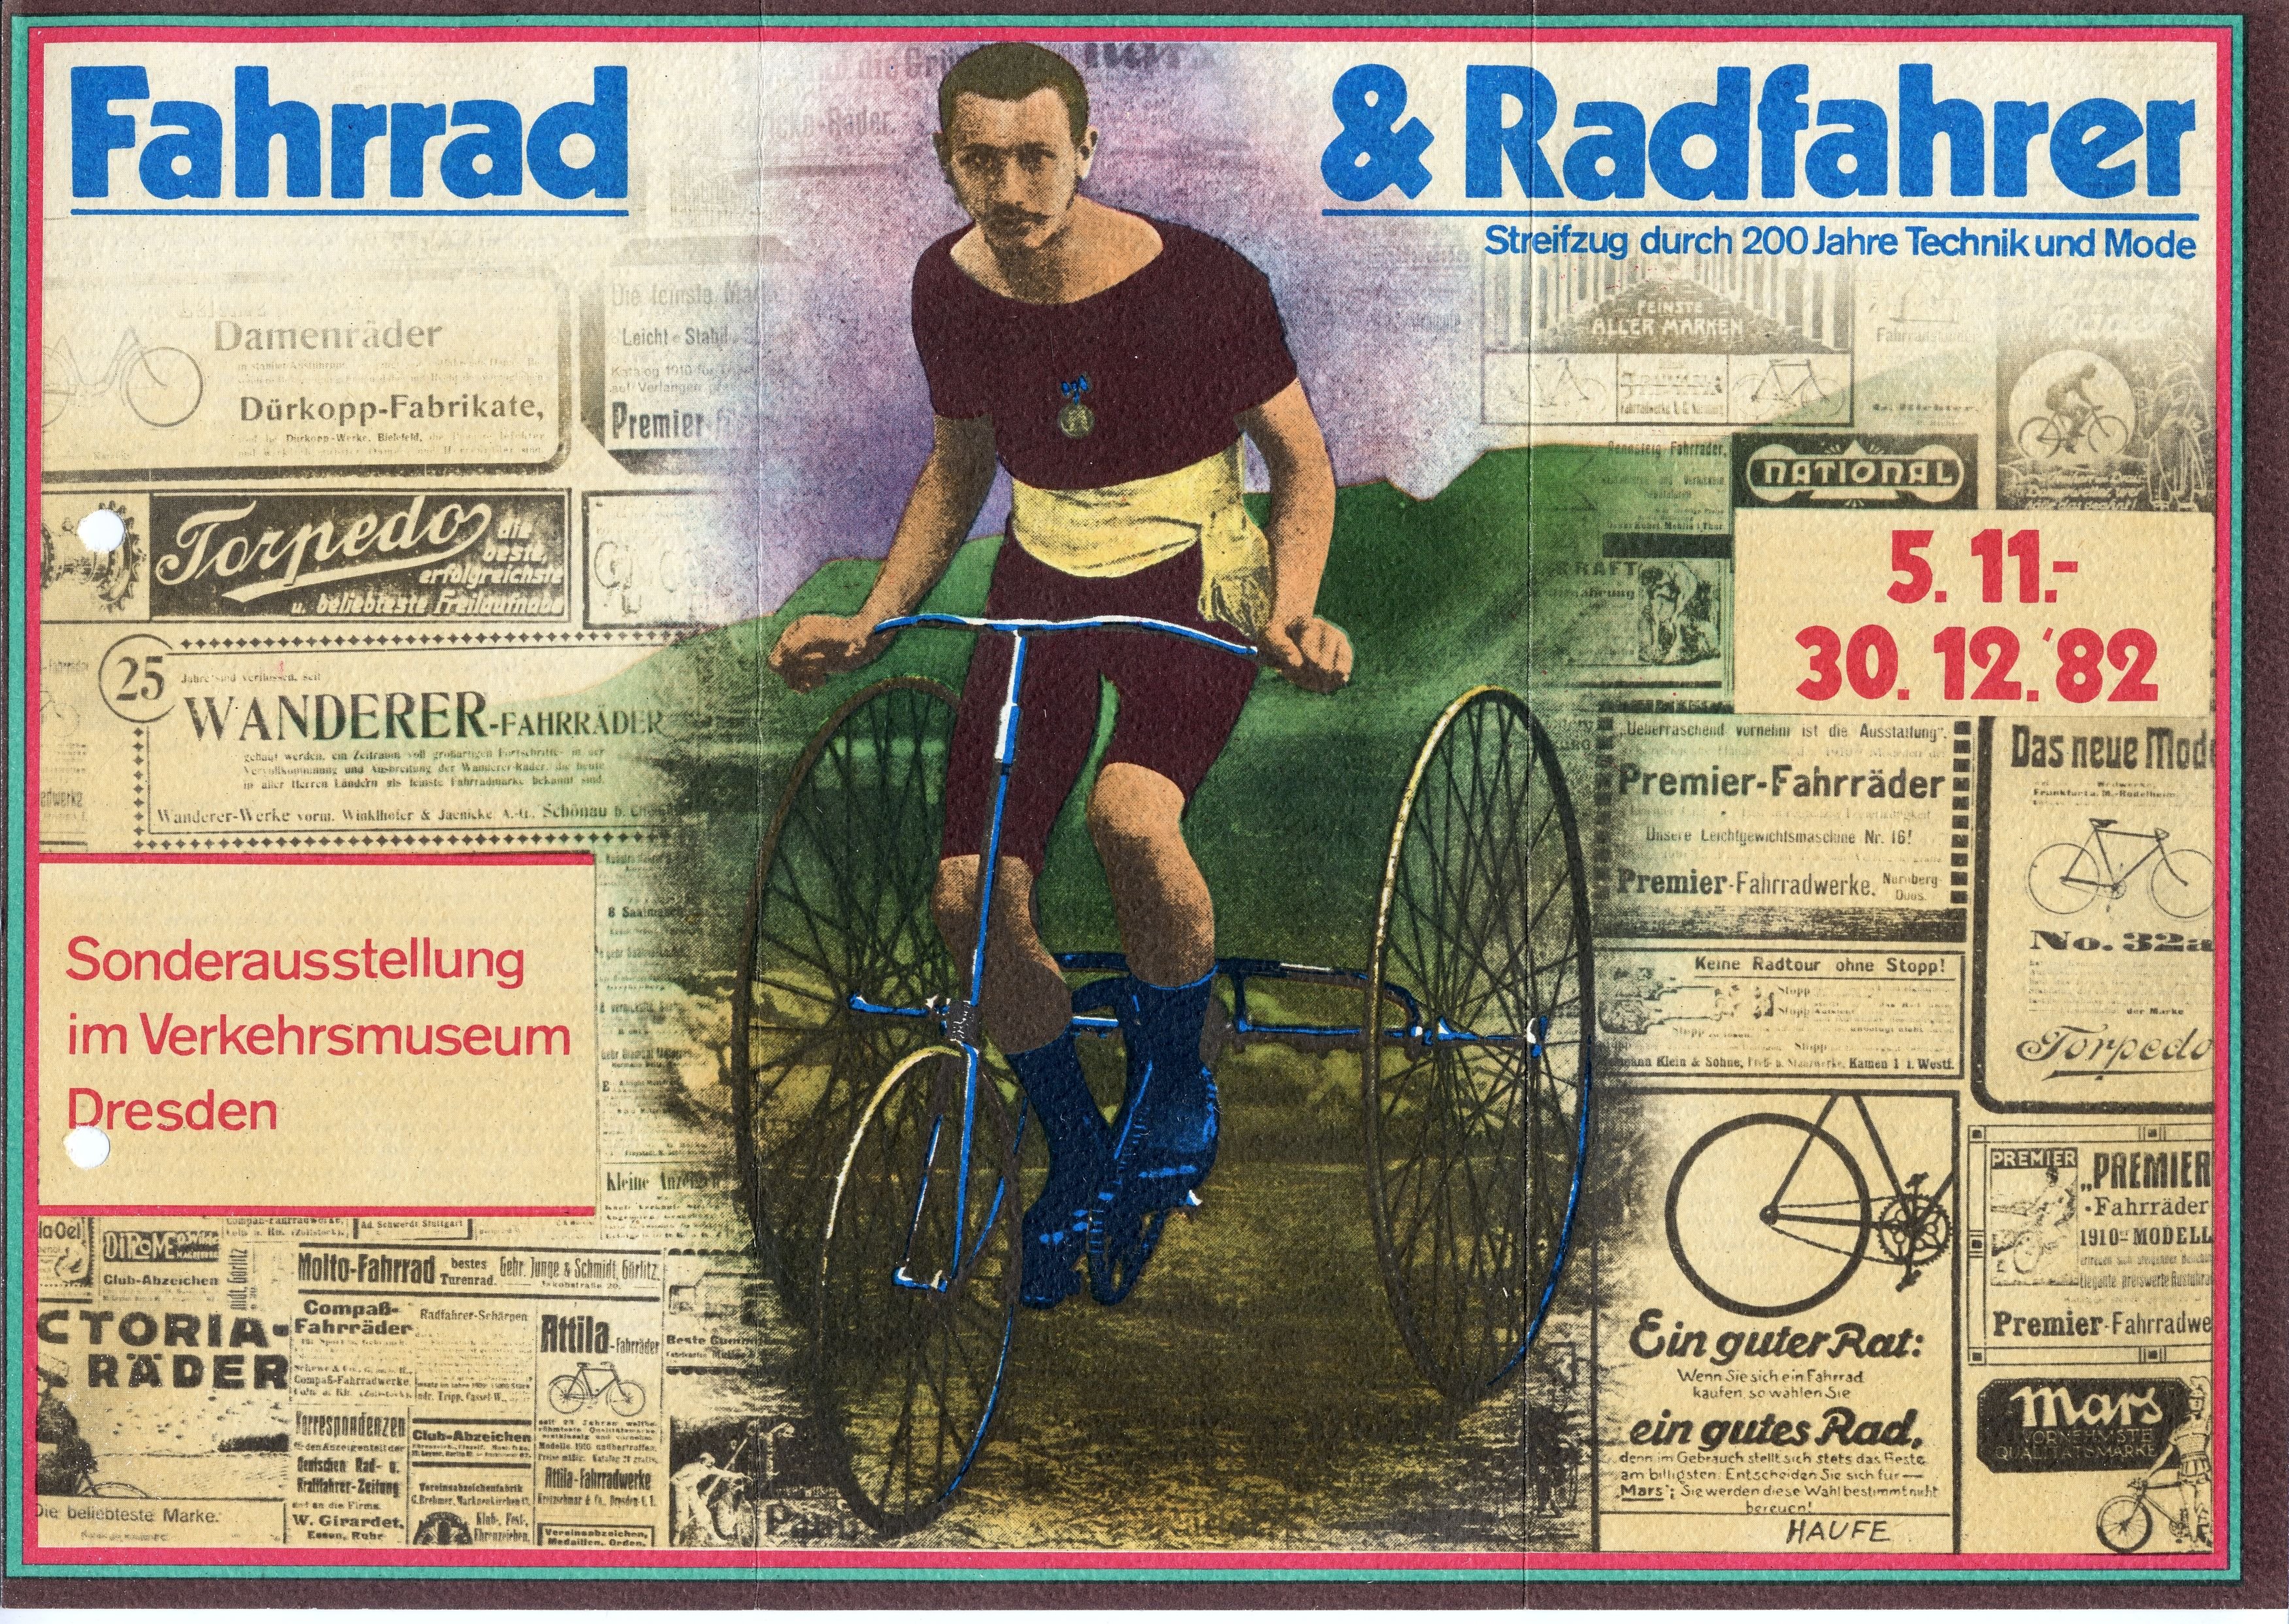 Plakat "Fahrrad und Radfahrer", Sonderausstellung im Verkehrsmuseum Dresden zur Geschichte des Fahrrades und des Radfahrens", 1982 (Verkehrsmuseum Dresden CC BY-NC-SA)